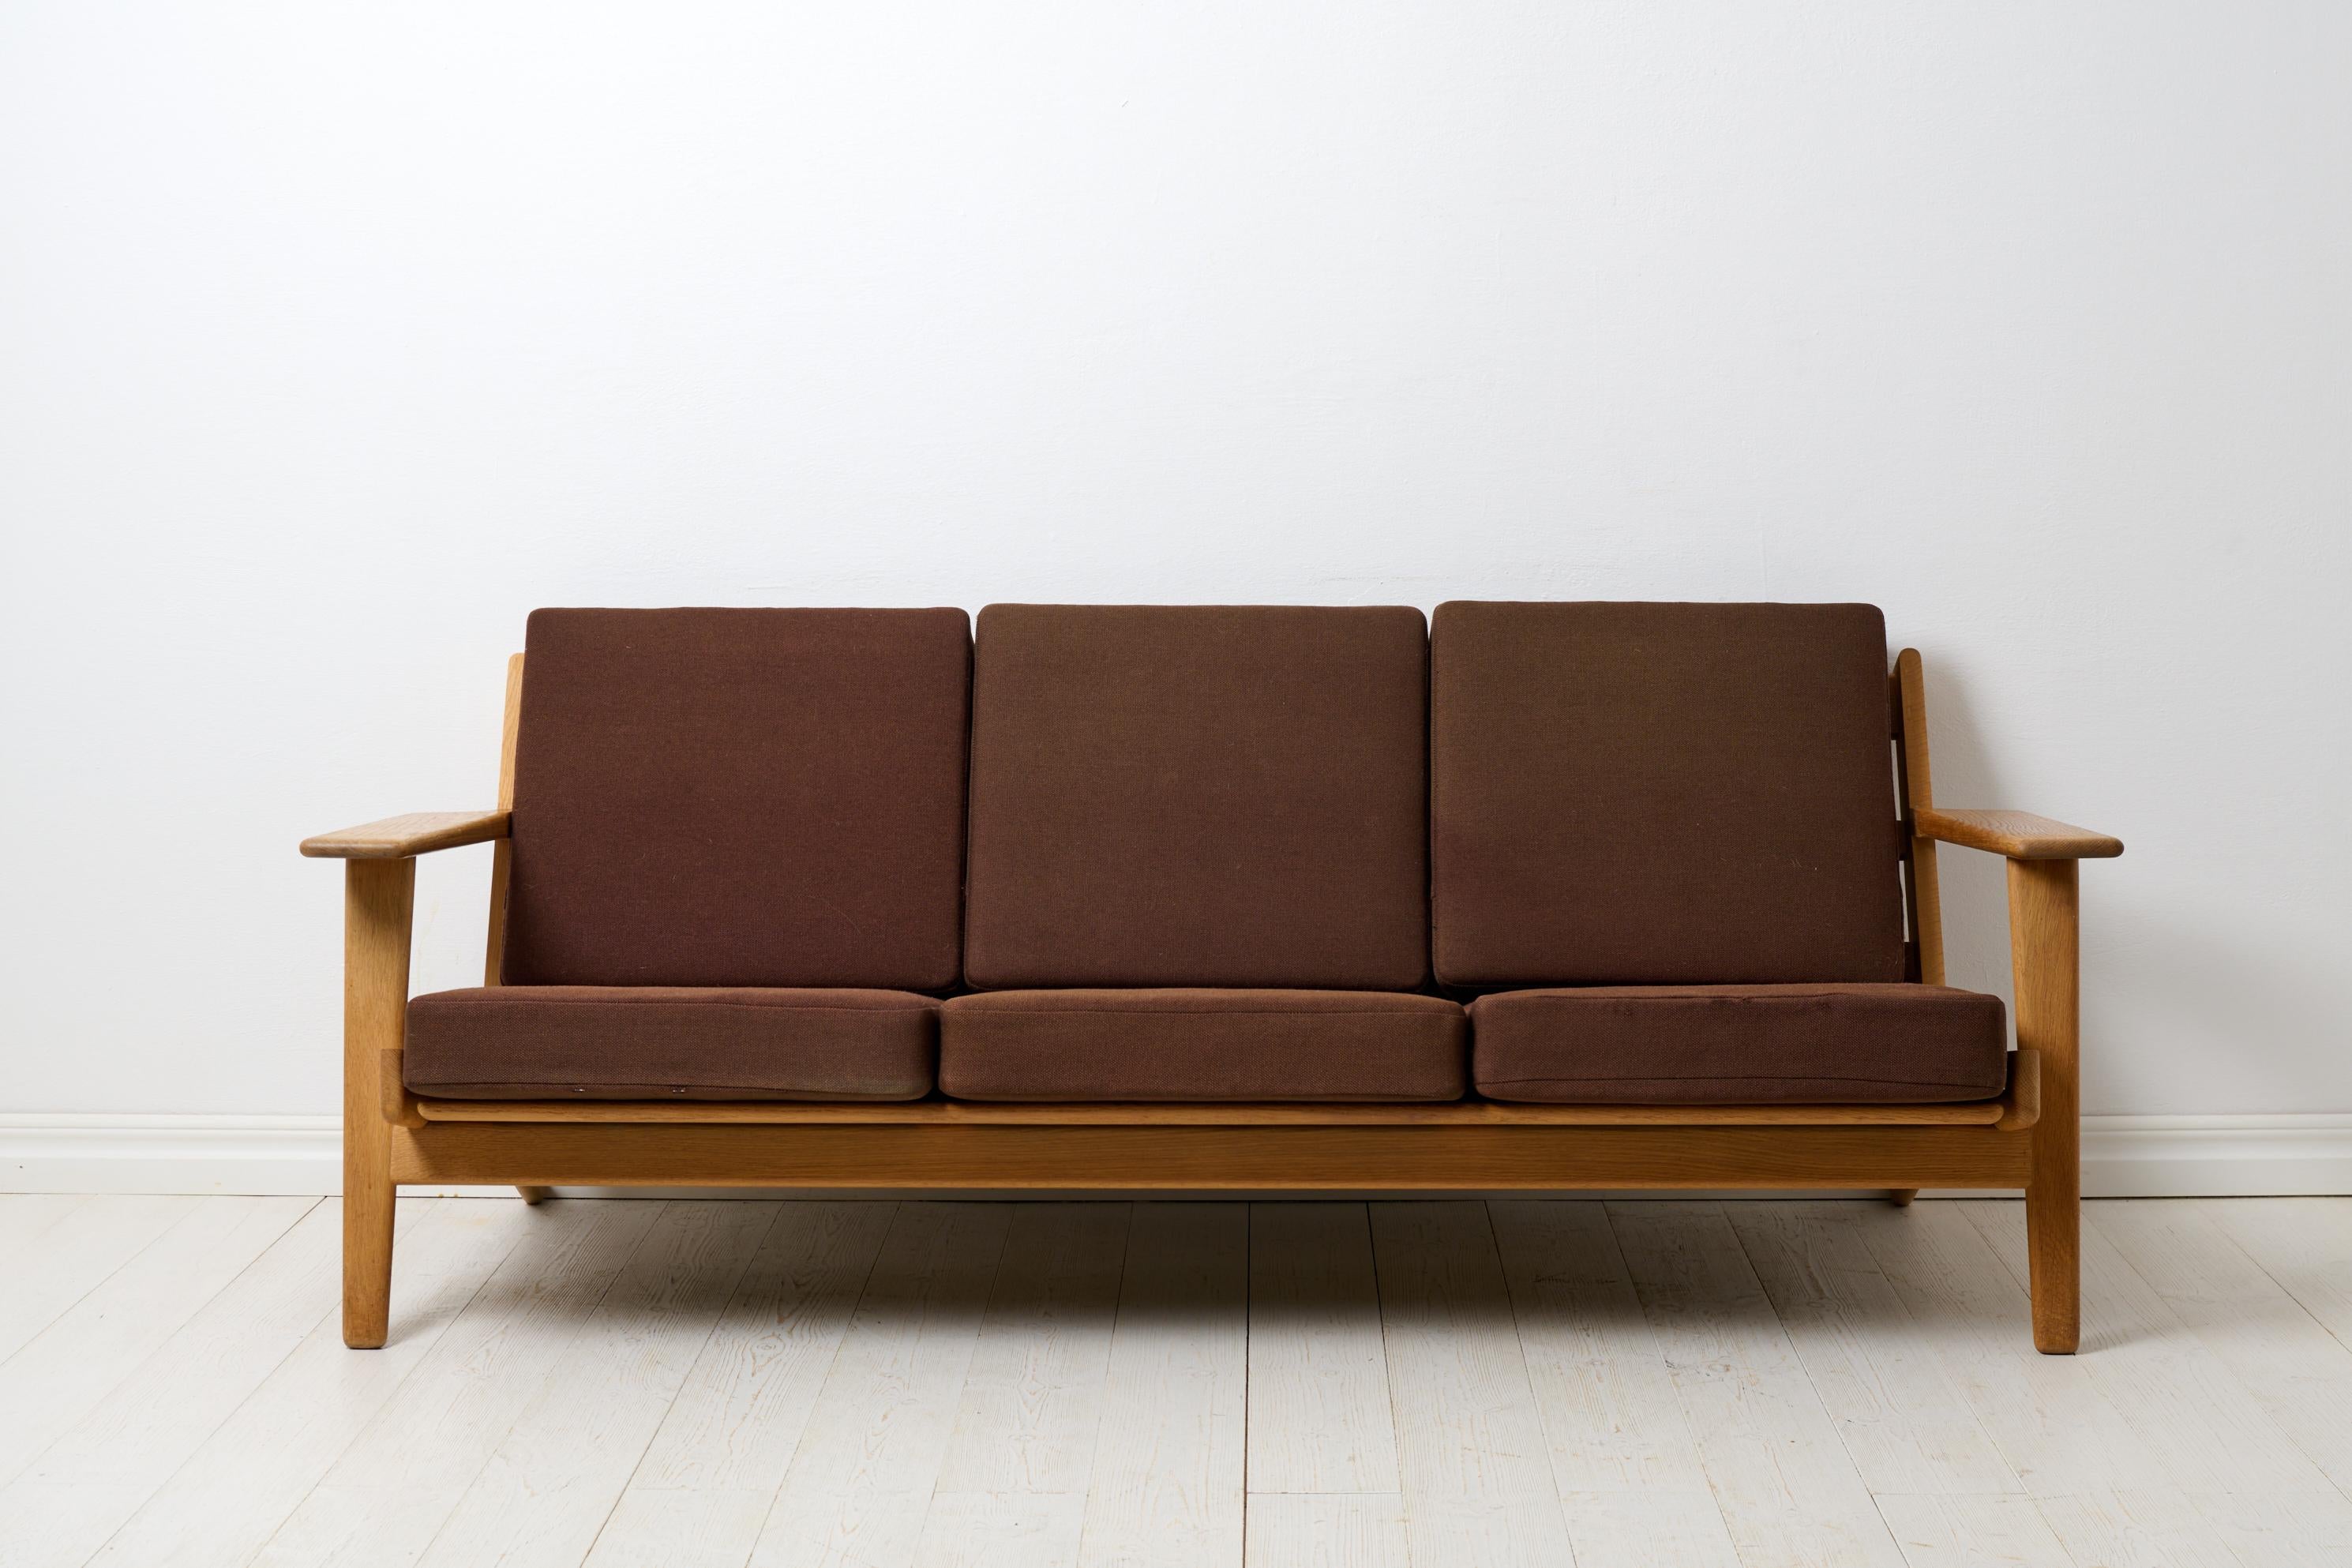 Vintage Hans J. Wegner Sofa Modell GE-290 für Getama Gedsted, Dänemark. Das Sofa ist ein Klassiker der Jahrhundertmitte von einem der berühmtesten Namen dieser Zeit, Hans J. Wegner (Dänemark, 1914-2007). Dieses Sofa ist aus Eichenholz gefertigt und